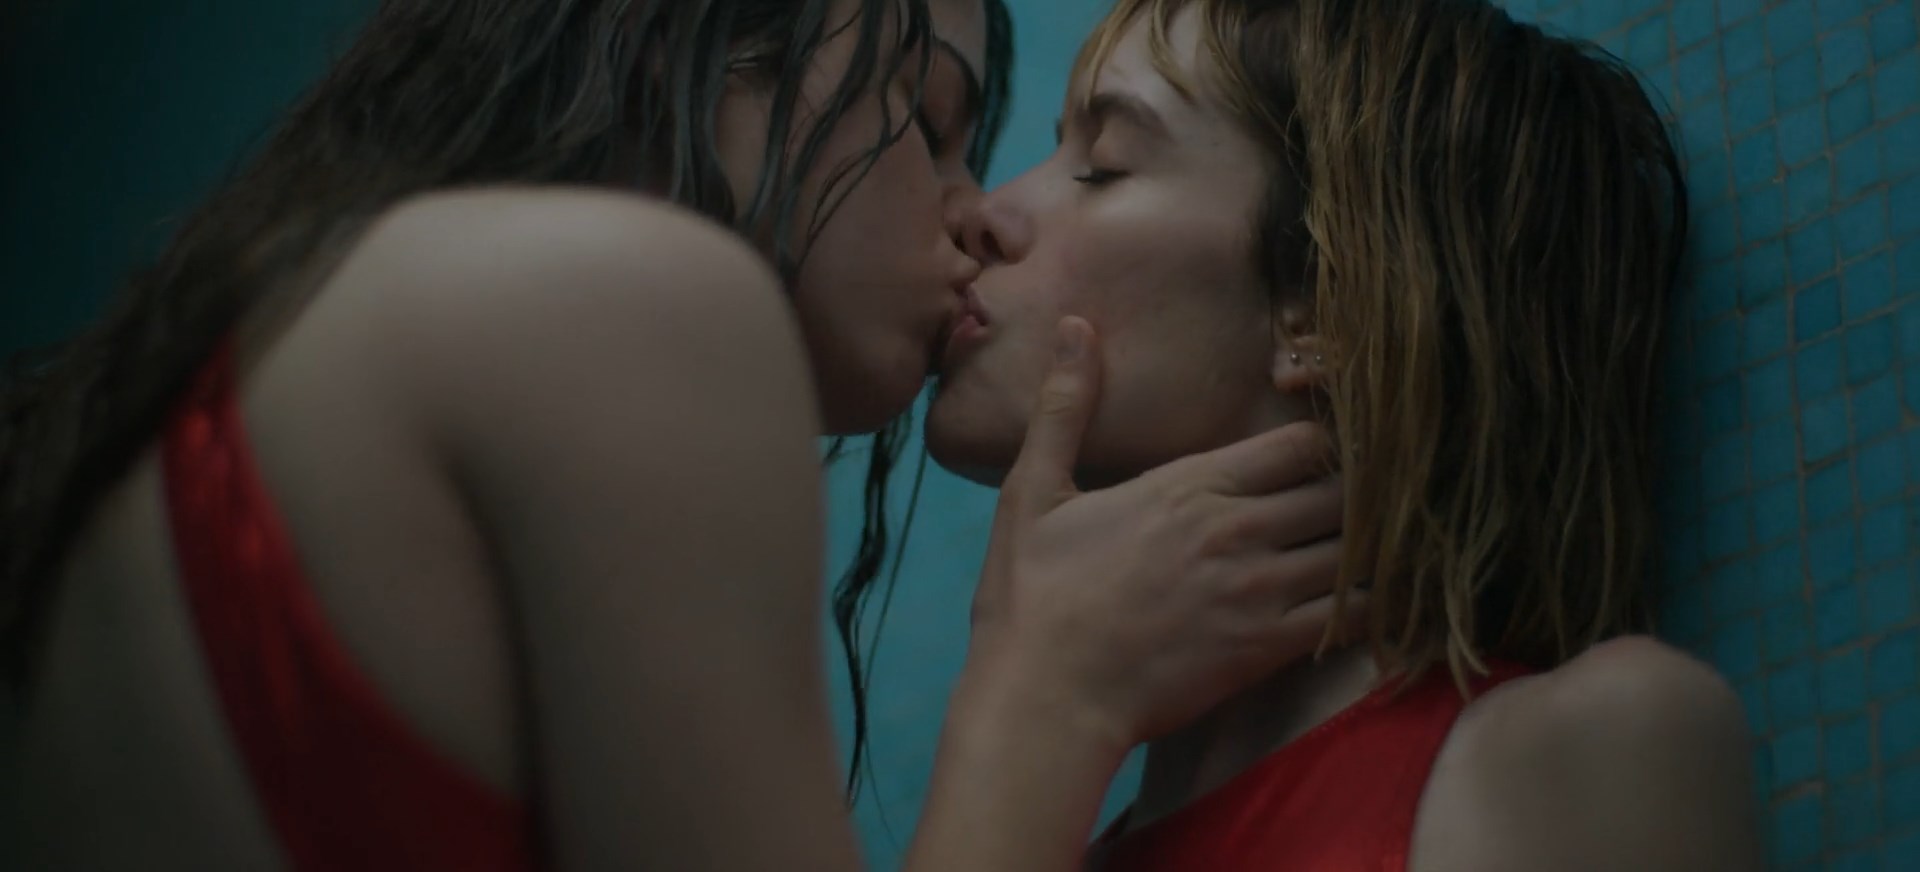 Maggie civantos lesbian kiss